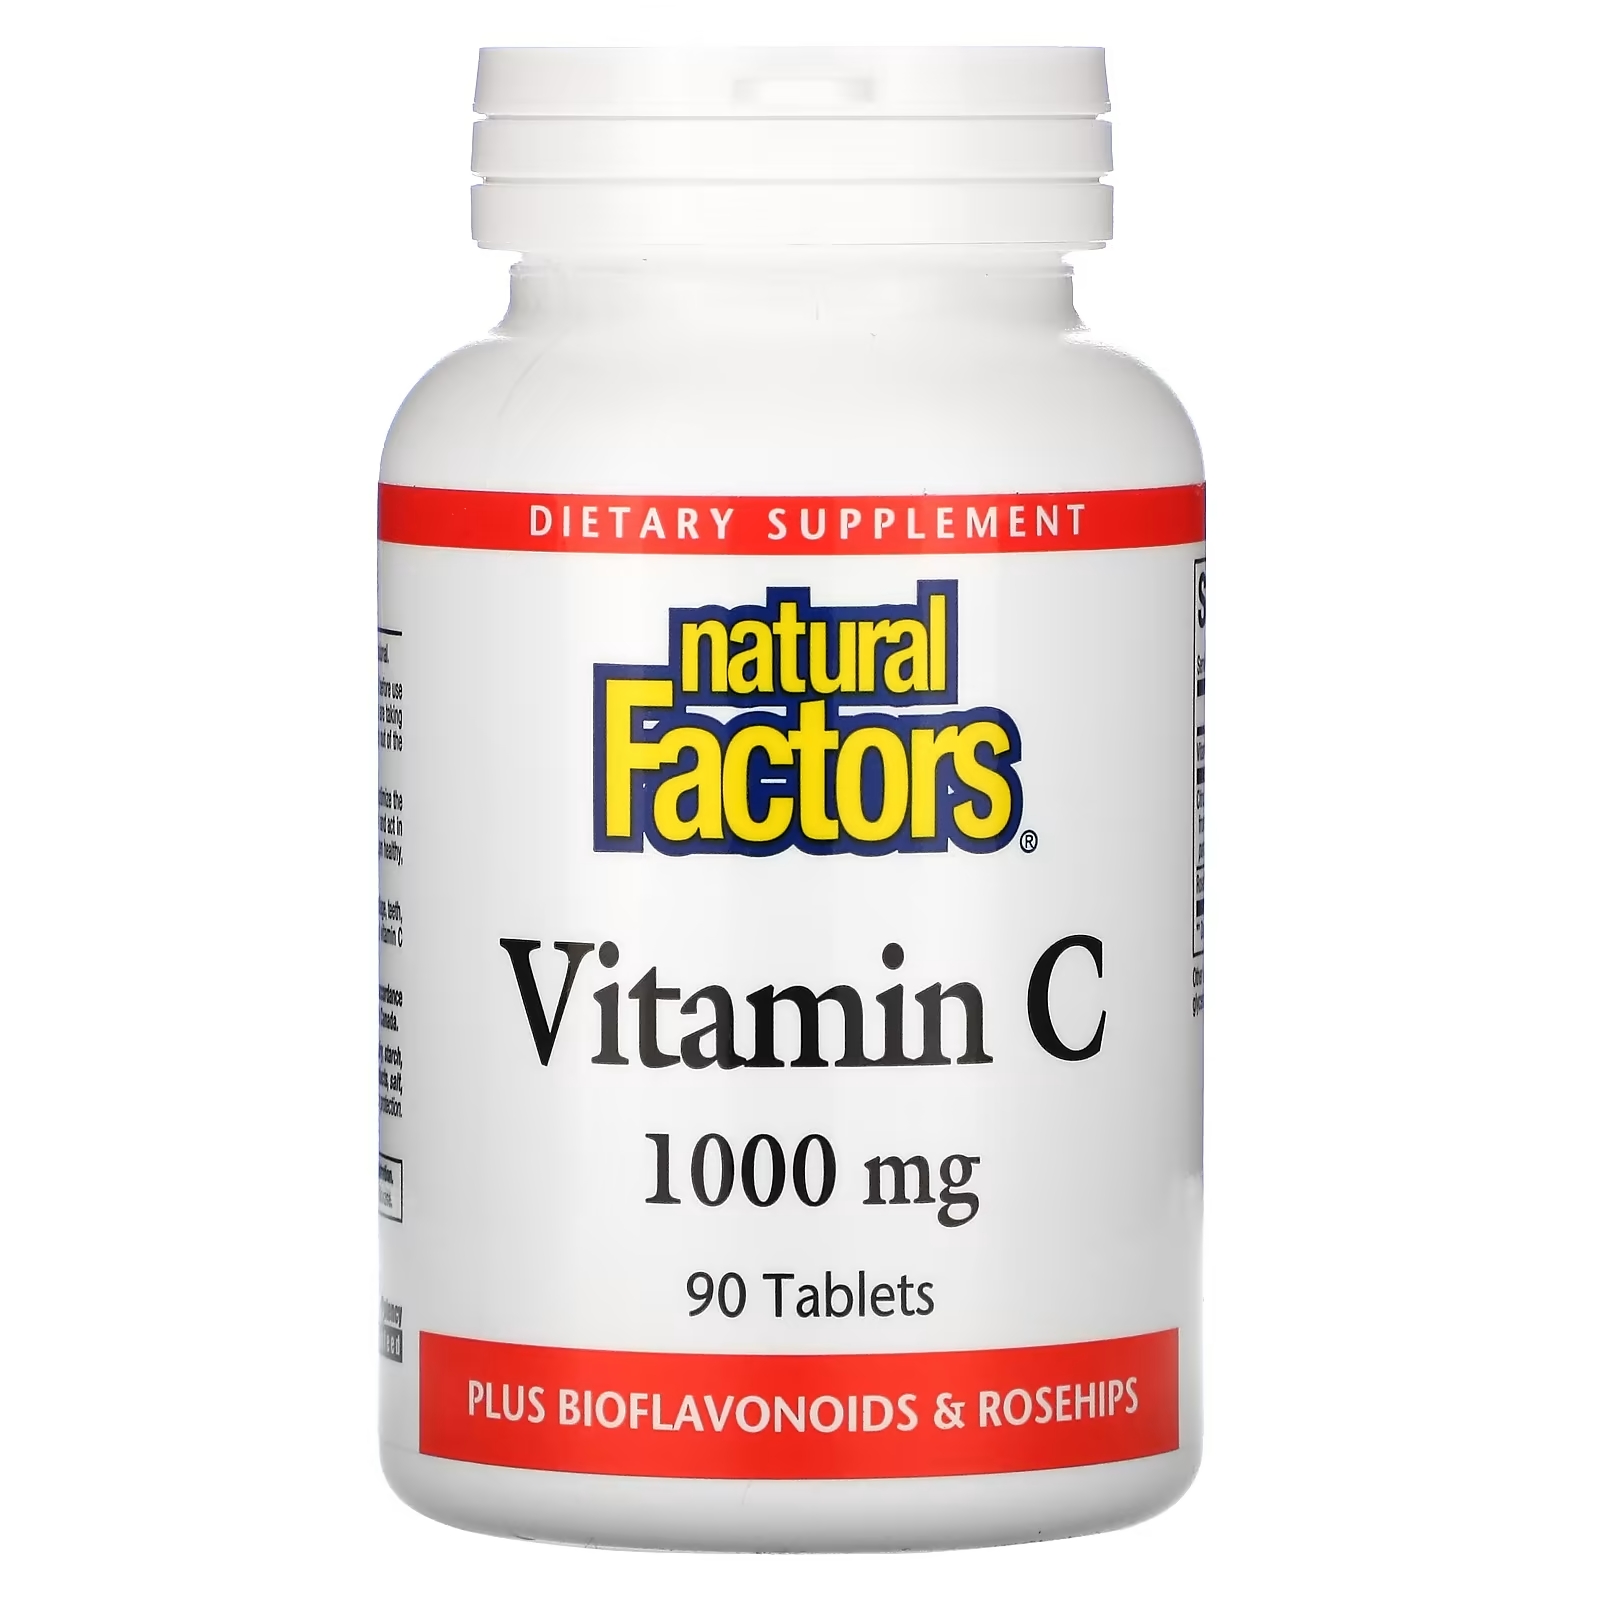 Natural Factors витамин C с биофлавоноидами и шиповником 1000 мг, 90 таблеток витамин b2 natural factors 100 мг 90 таблеток